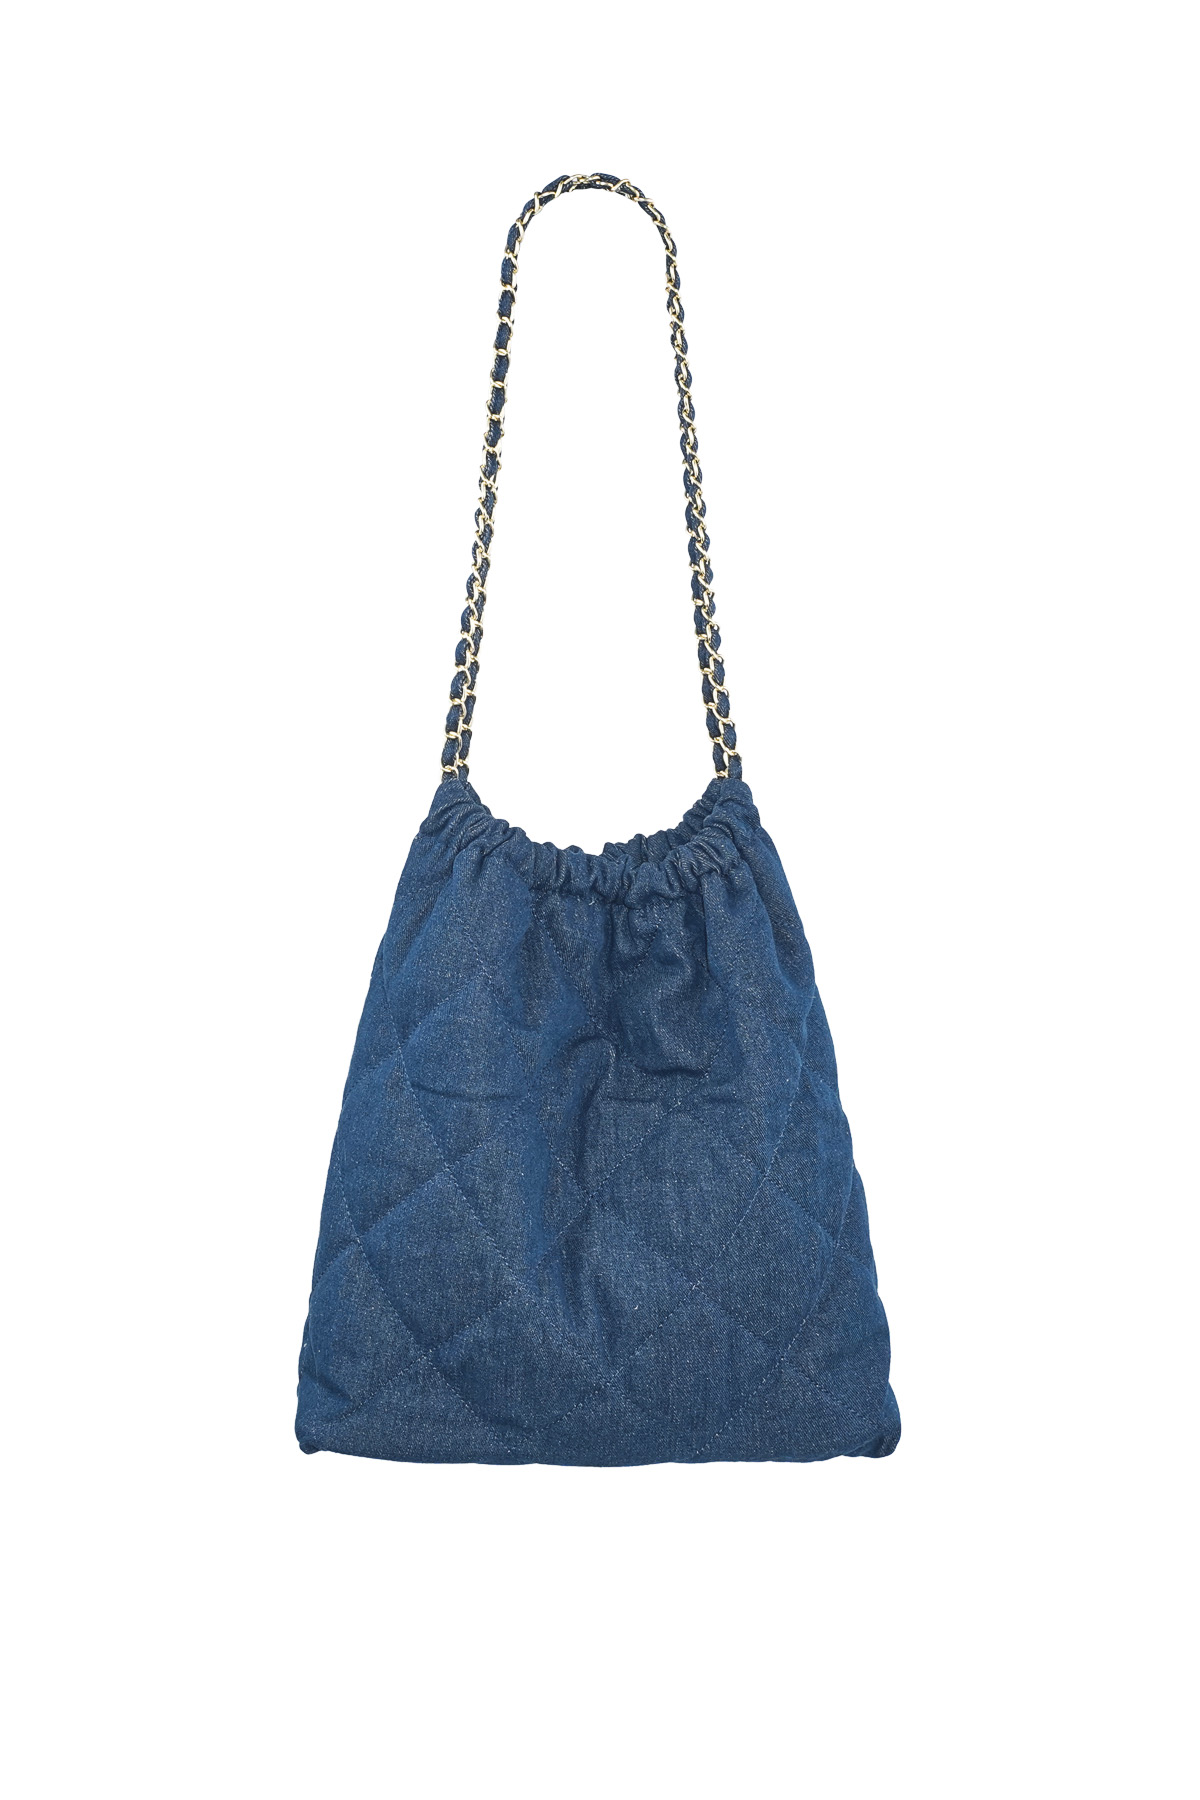 Dikiş motifli ve zincirli denim çanta - orta koyu mavi